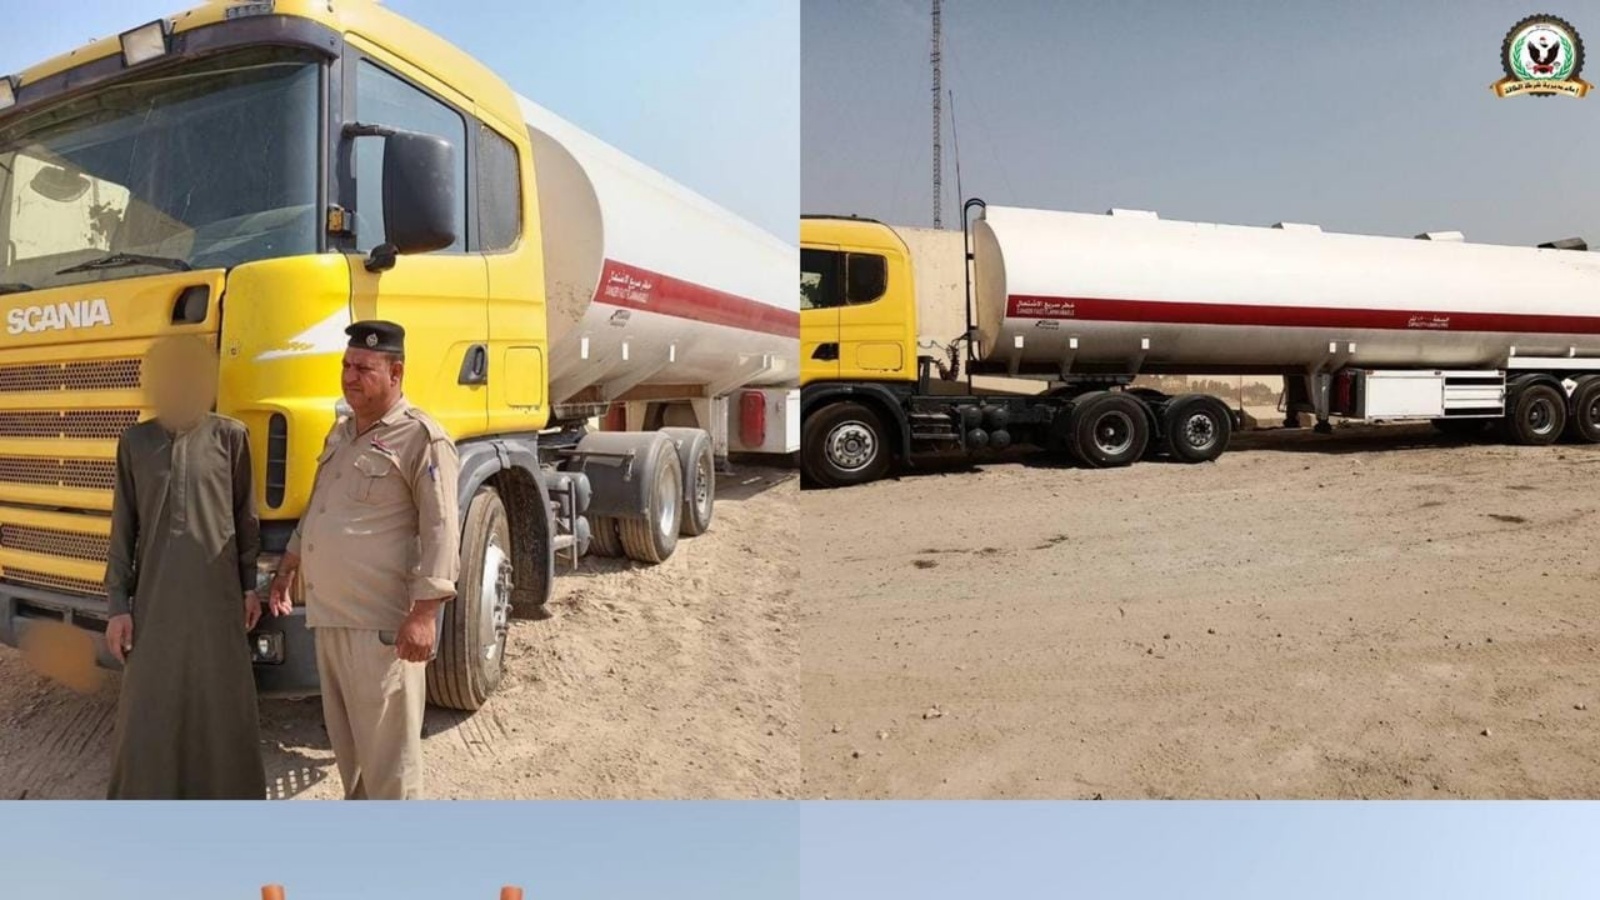 شرطة الطاقة العراقية خلال ضبطها لشاحنات حوضية لتهريب النفط ومشتقاته في جنوب البلاد (فيسبوك)